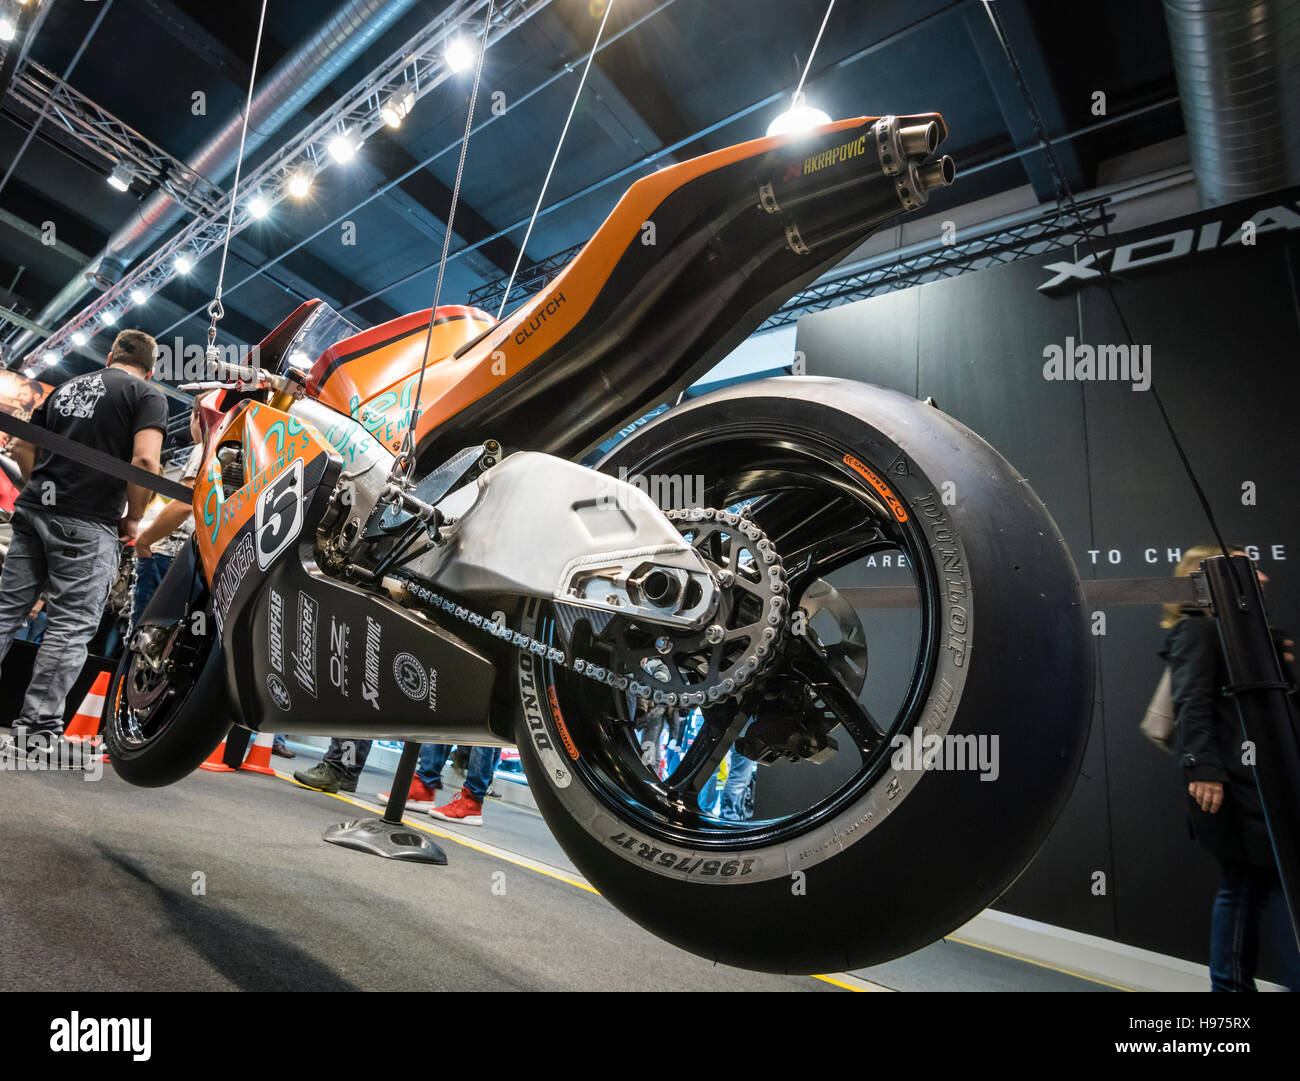 Zürich, Schweiz - 21. Februar 2016: eine herrliche poliert Harley Davidson  custom Motorrad auf größte Motorradmesse Swiss Moto Zürich, Schweiz  ausgestellt ist Stockfotografie - Alamy